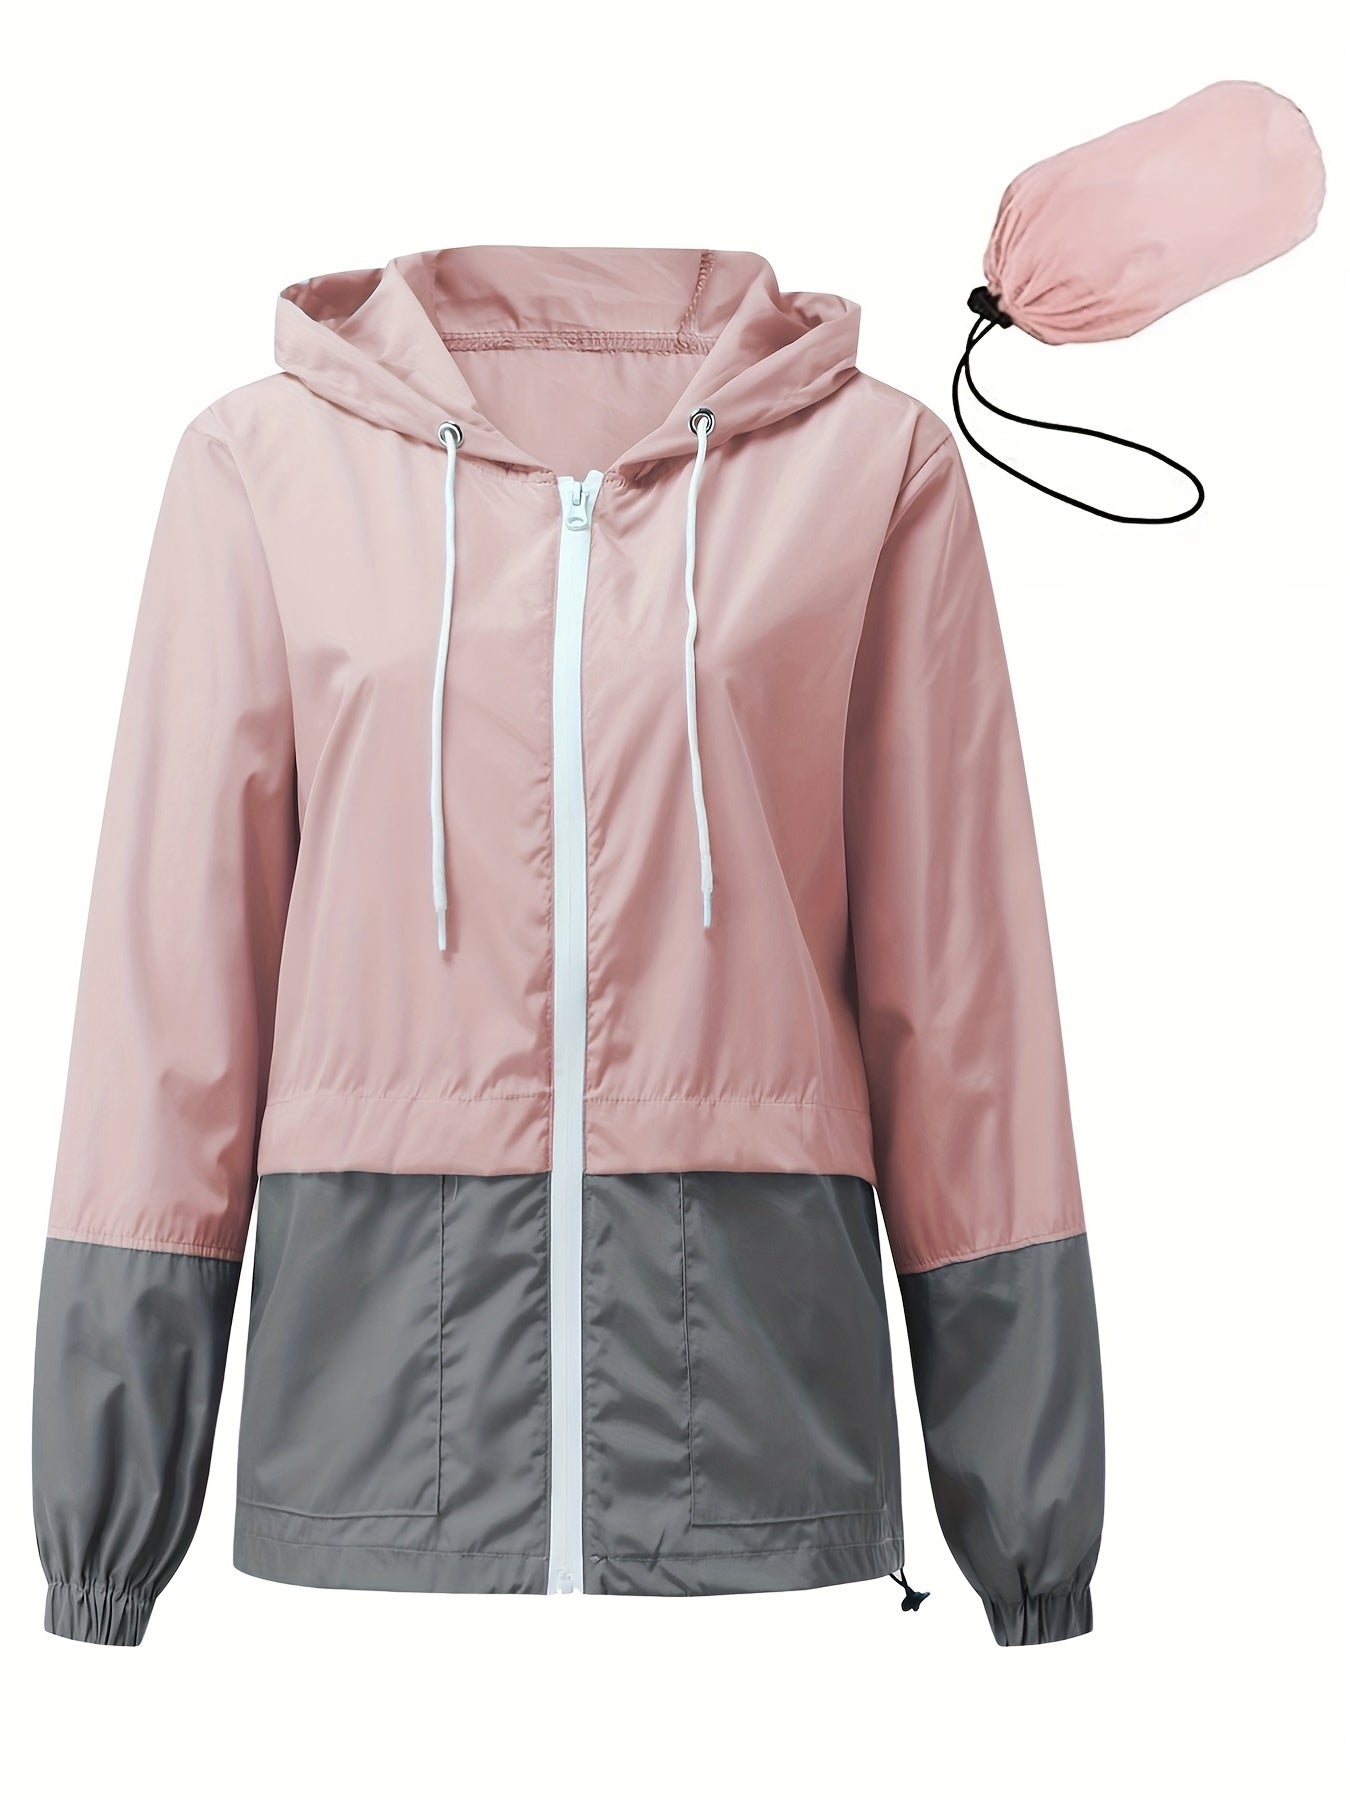 Women's Outwear Women Rain Coats Lightweight Waterproof Outdoor Rain Jacket